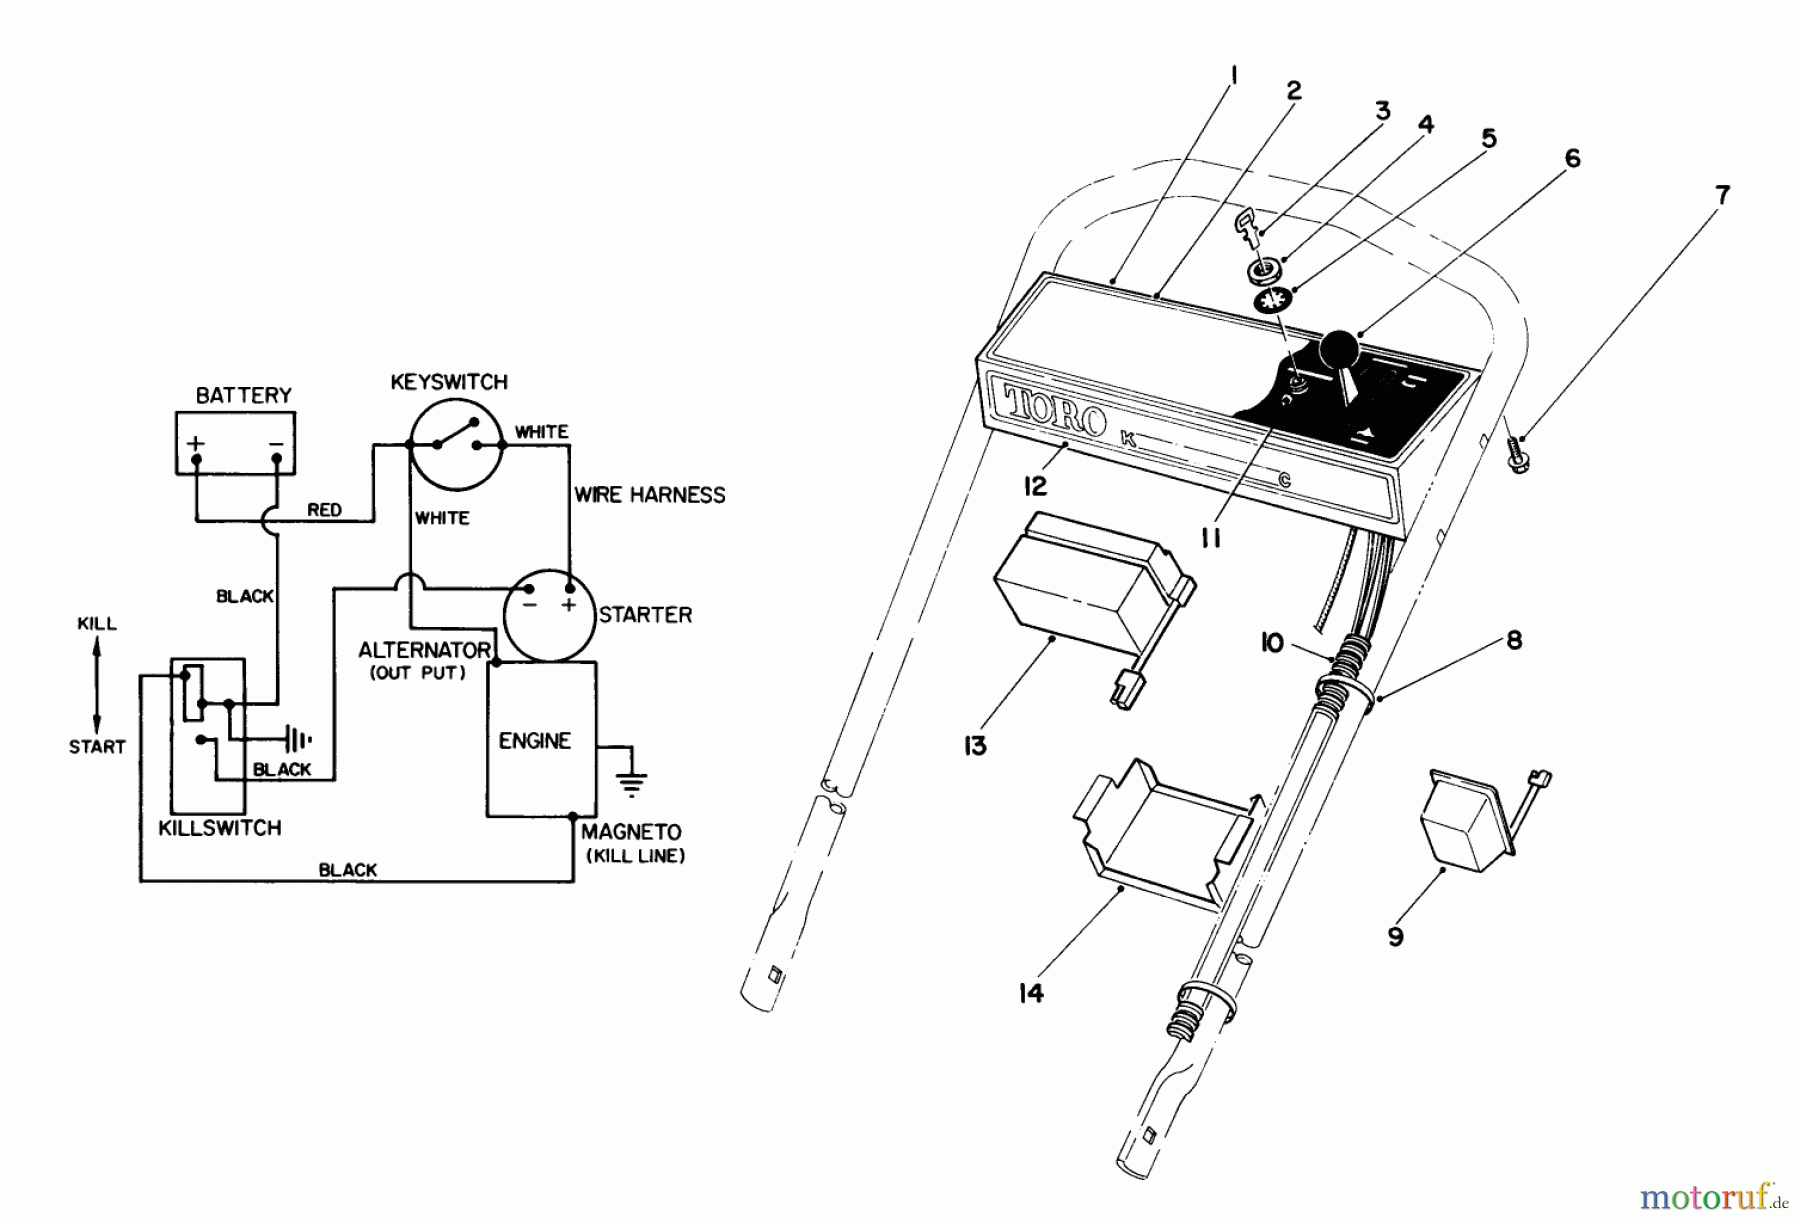  Toro Neu Mowers, Walk-Behind Seite 1 20574 - Toro Lawnmower, 1988 (8000001-8999999) CONTROL PANEL ASSEMBLY